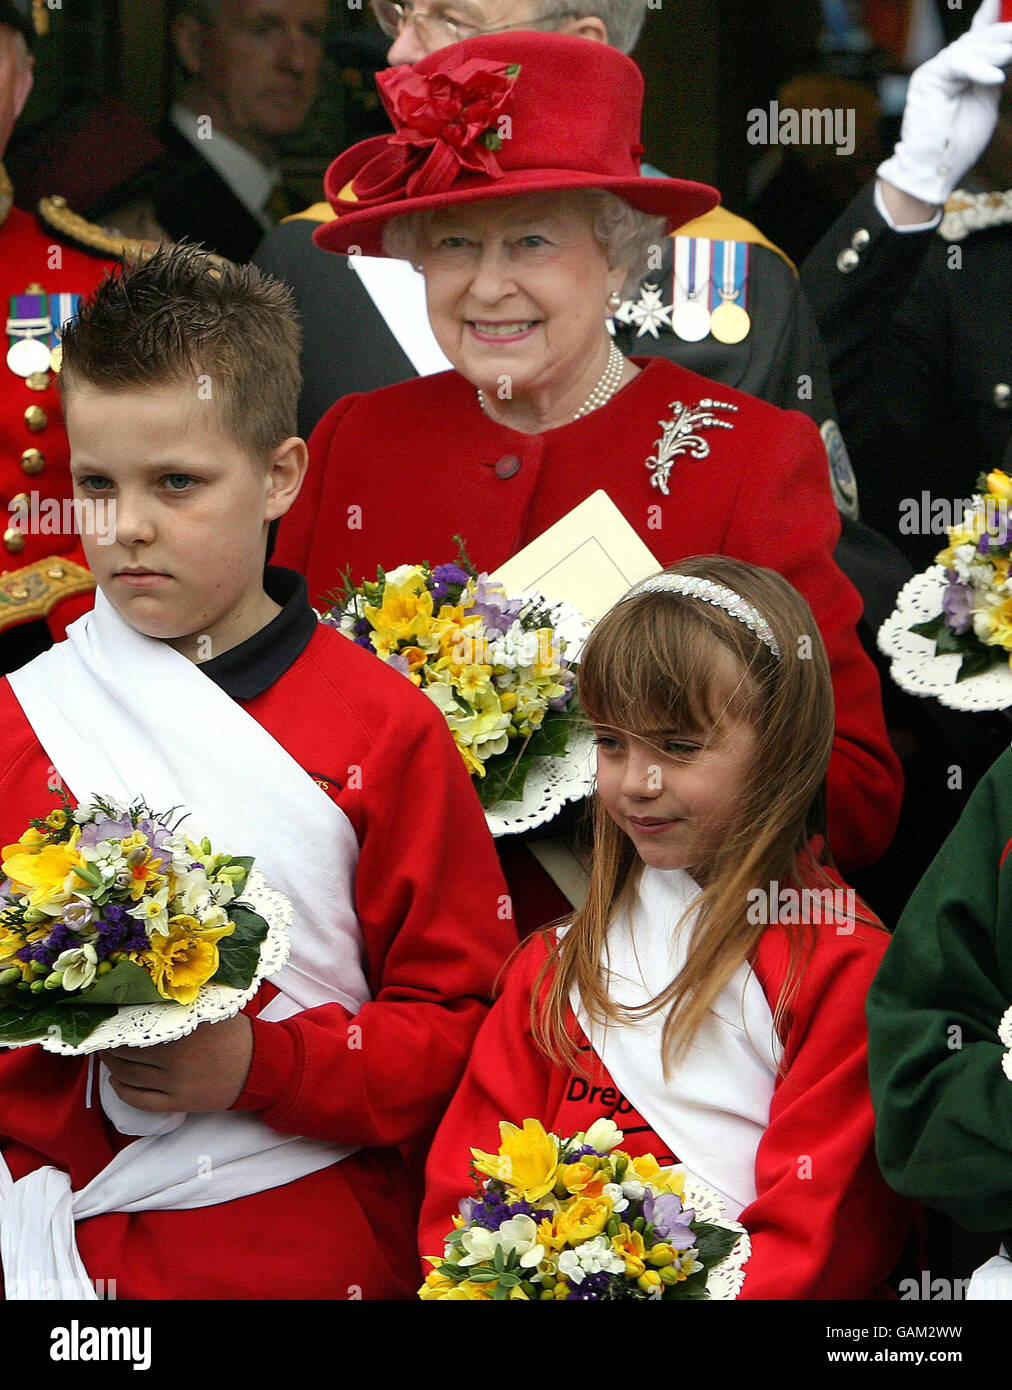 Die Königin posiert für ein offizielles Bild vor der St. Patrick's Cathedral in Armagh City, Nordirland, nach dem traditionellen Maundy Service, wo sie heute 82 Männern und 82 Frauen Maundy Money überreichte. Stockfoto